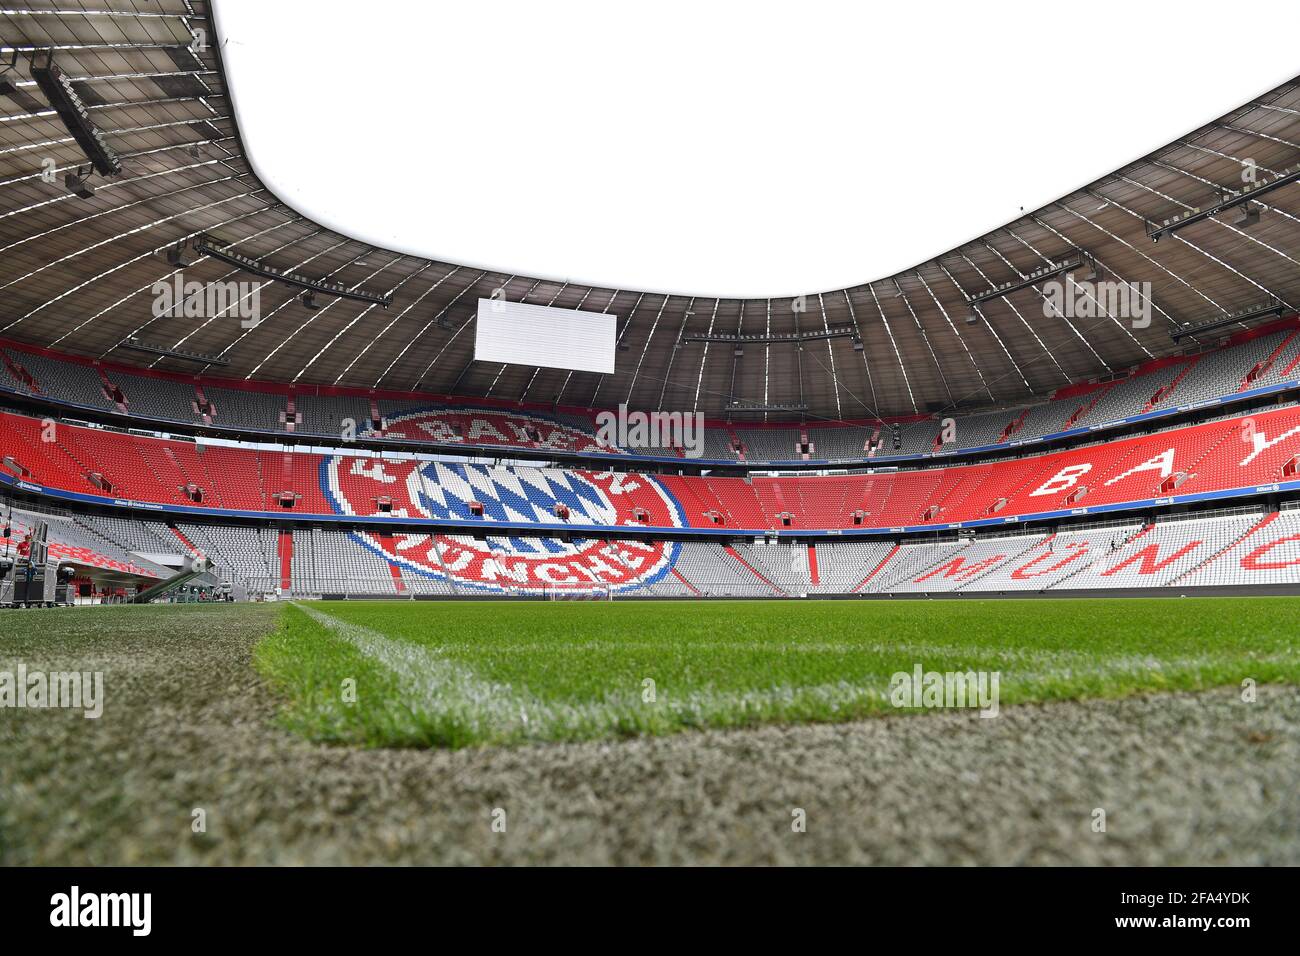 Muenchen restera-t-il l'hôte de l'EM ? L'Union européenne de football a accru la pression sur le site EM allemand de Munich et a fixé un délai pour une garantie de spectateur. Aujourd'hui 23.04. L'UEFA veut décider si Munich restera le lieu de trois matchs préliminaires et un quart de finale, photo d'archive : Allianz Arena vide, stade, centre sportif, intérieur, rangs vides, vide. Vue d'ensemble, FC Bayern Munich, le 27 août 2018. Â | utilisation dans le monde entier Banque D'Images